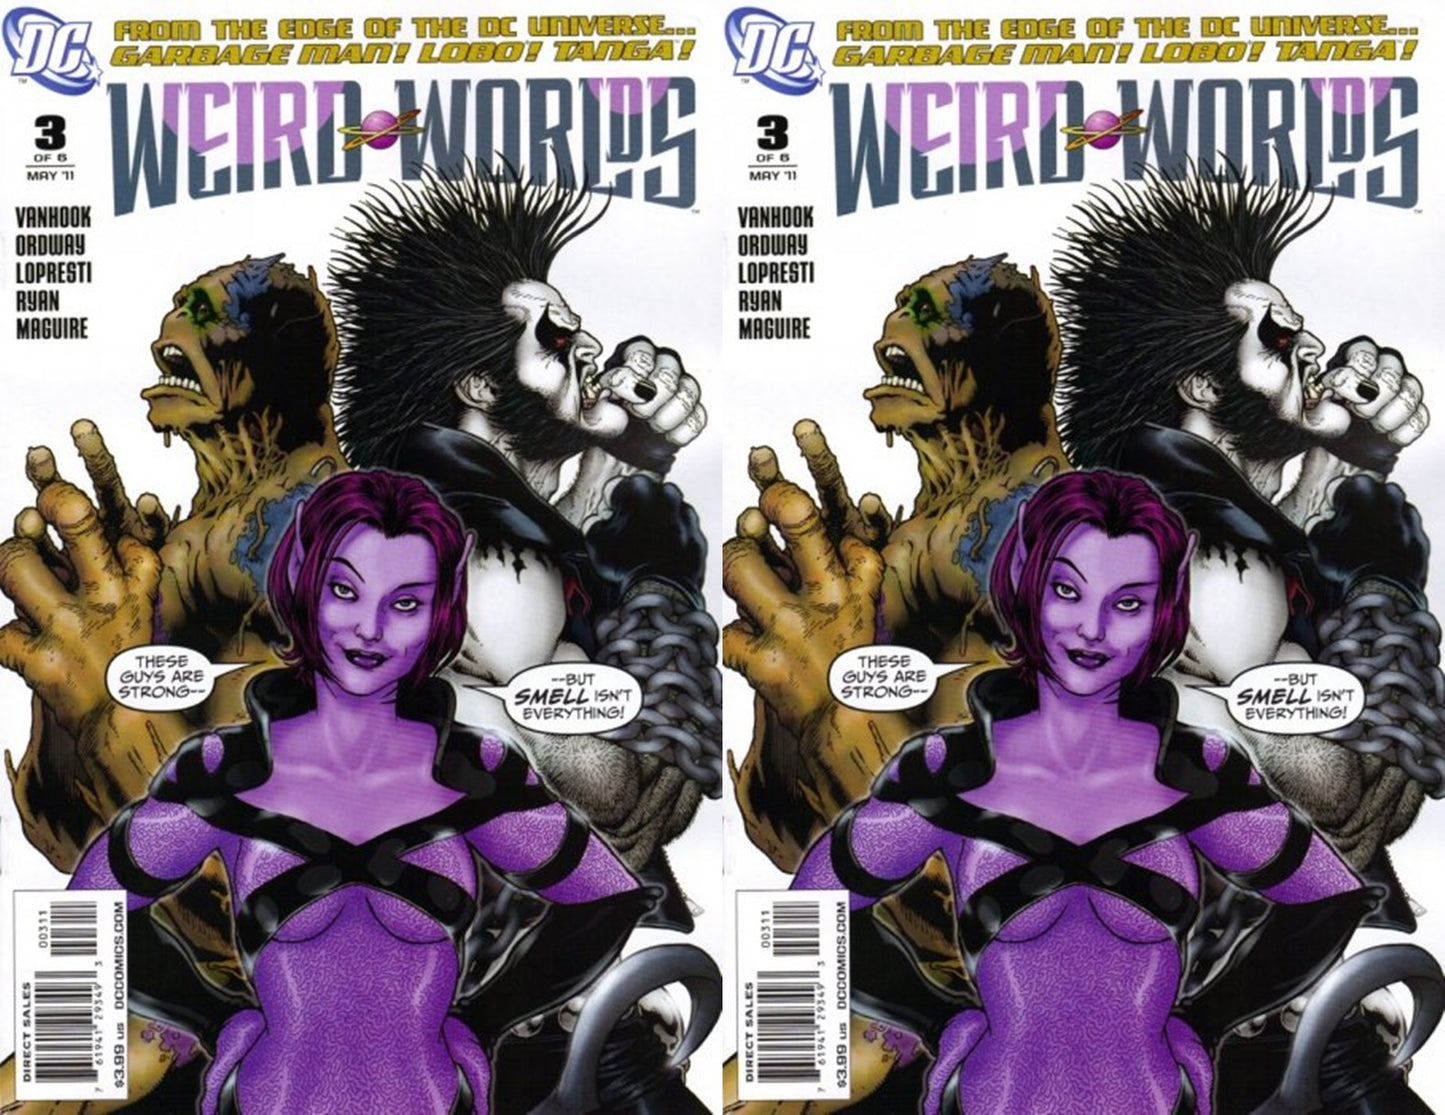 Weird Worlds #3 Volume 4 (2011) DC Comics - 2 Comics